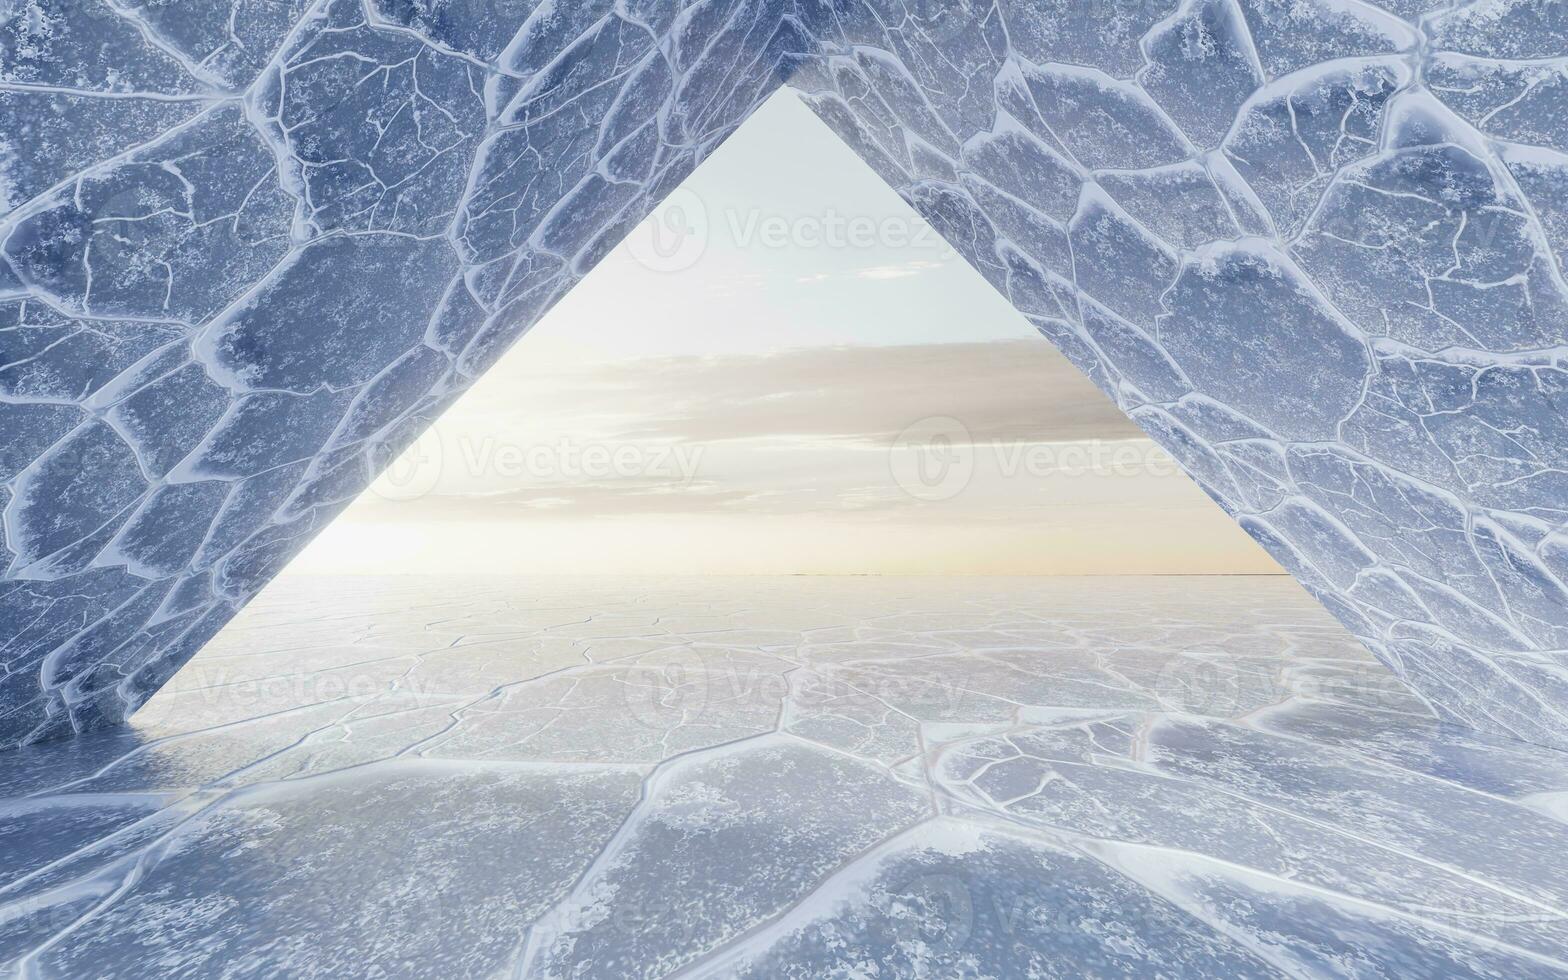 ijs grond met barst patroon, 3d weergave. foto